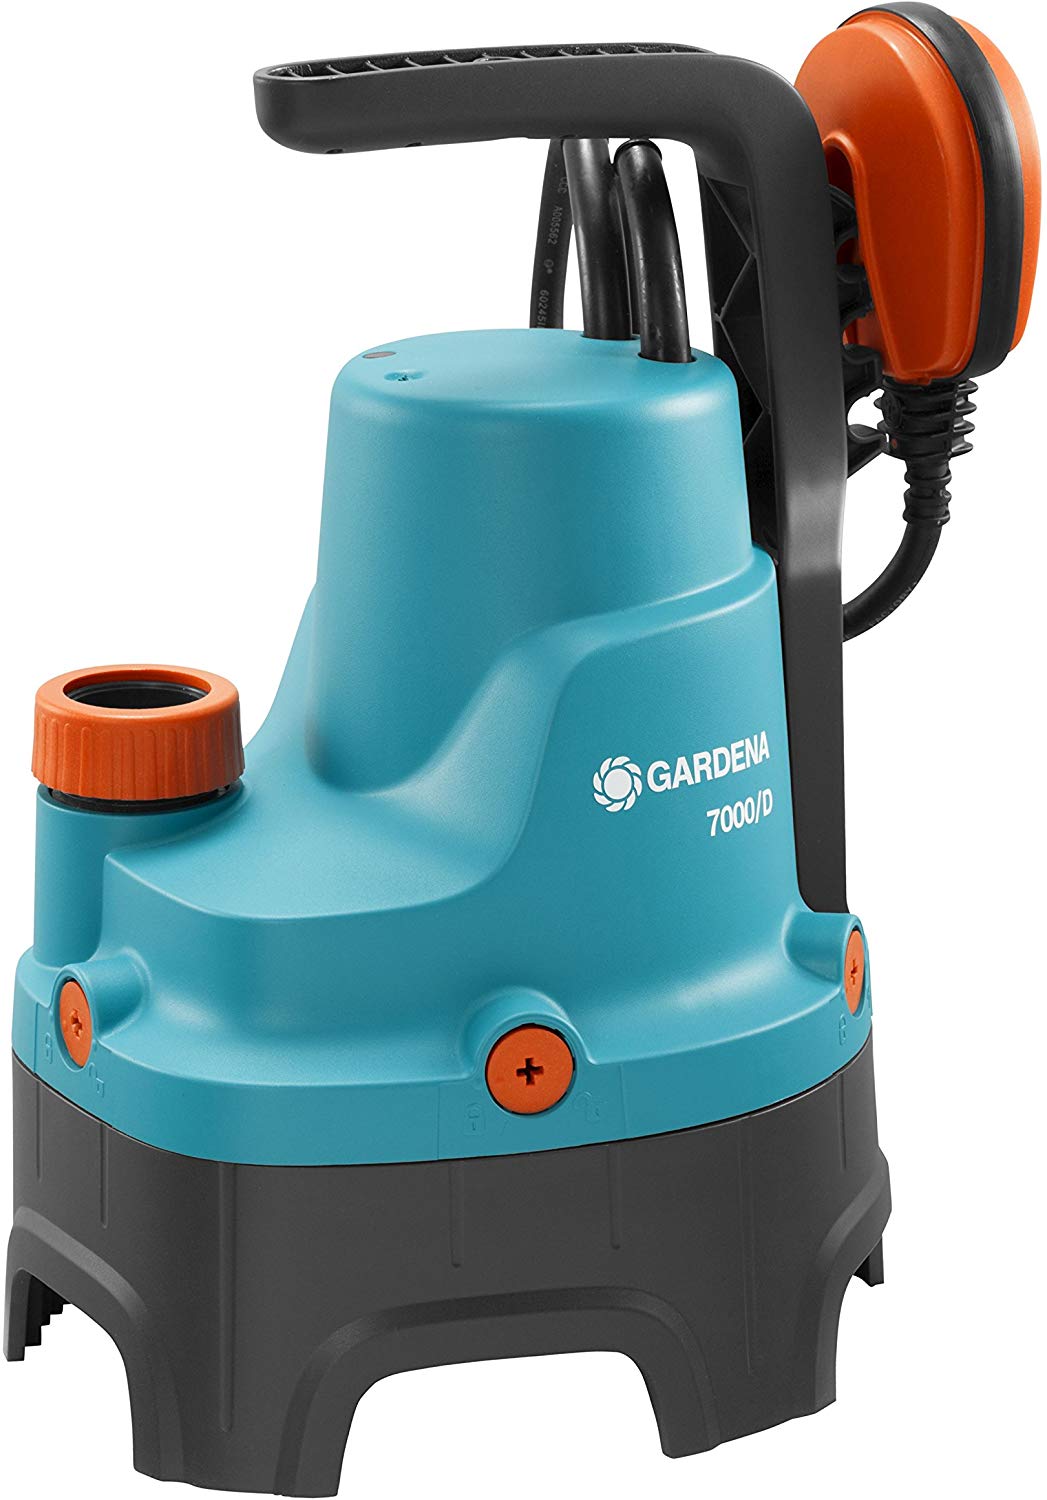 Gardena - Dirty Water Bilge Pump 7000/D